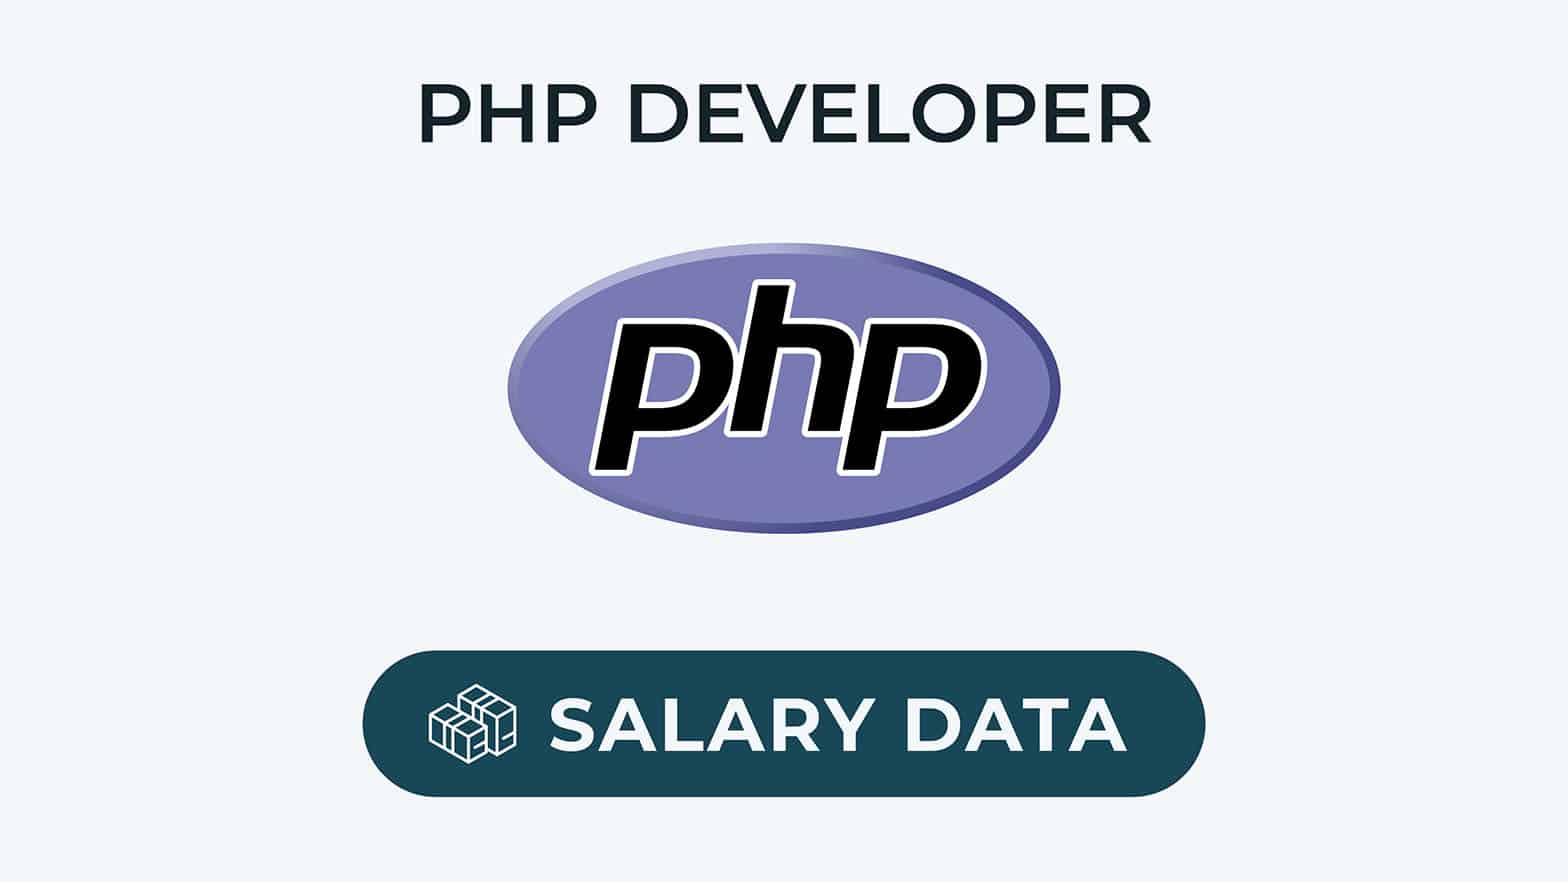 Salaire du développeur PHP